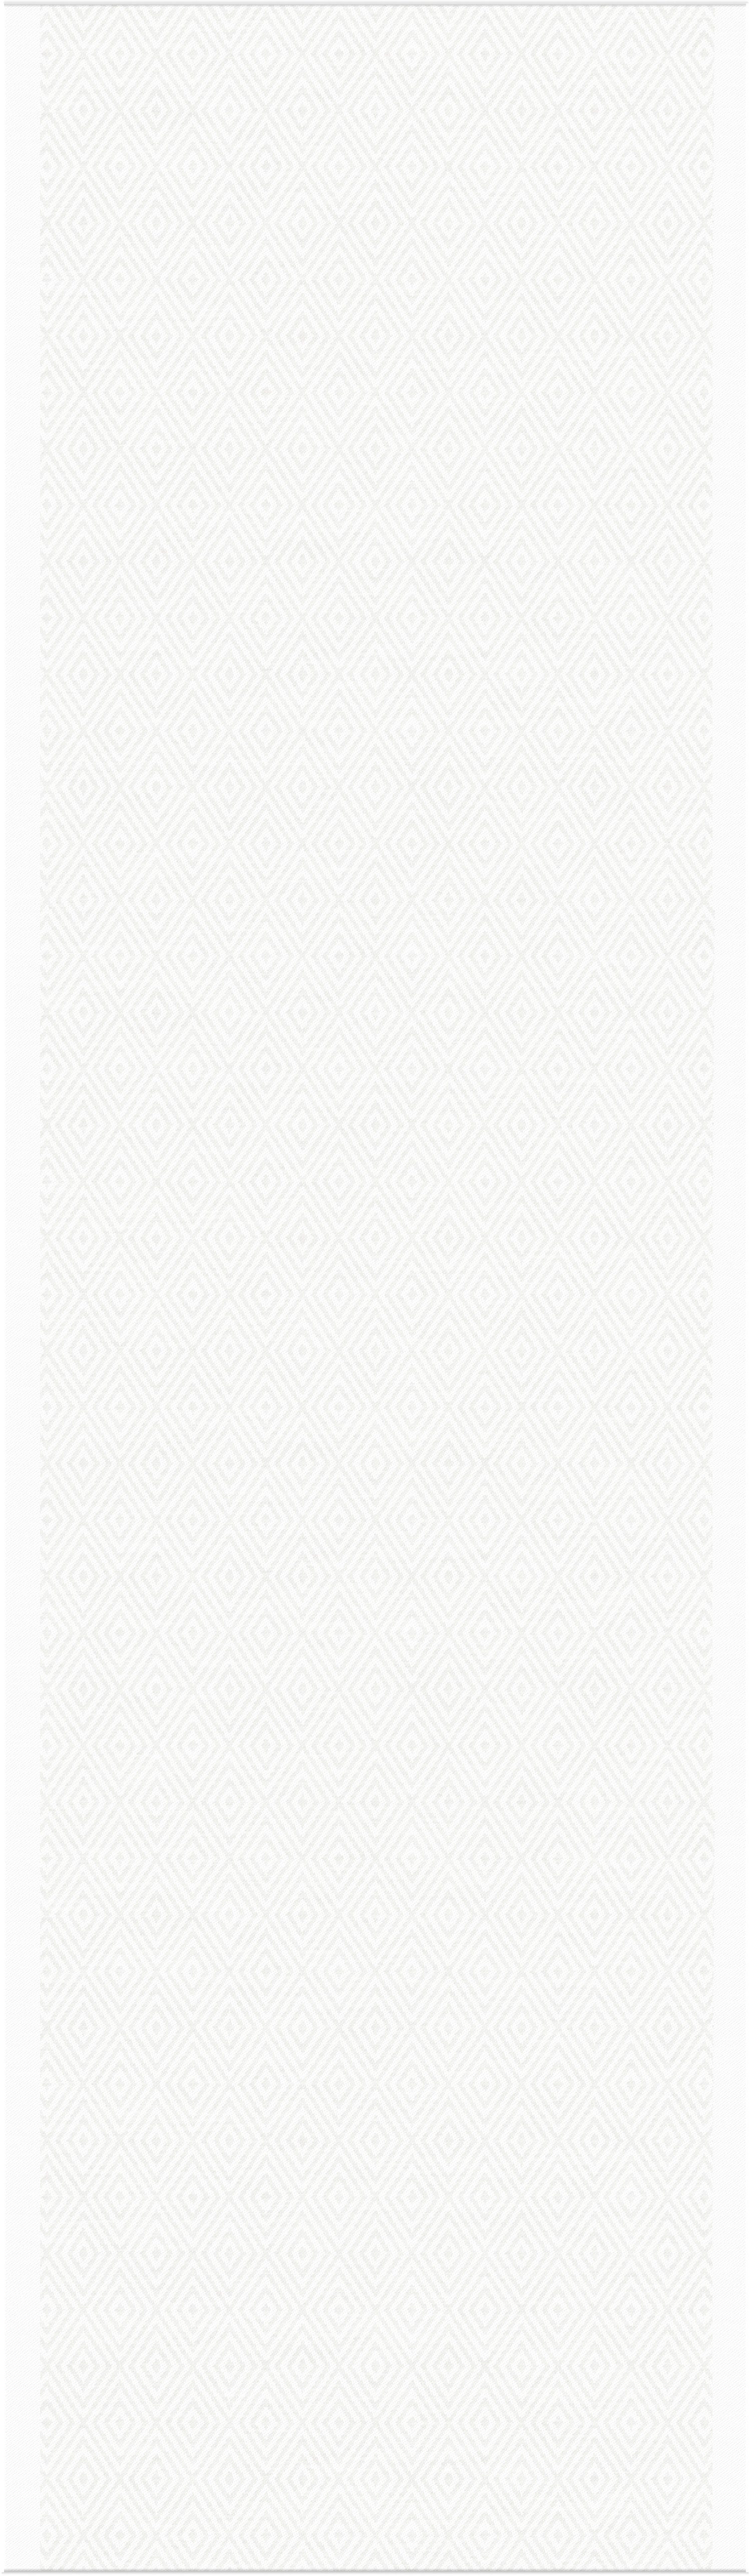 Ekelund Tischläufer Tischläufer Gåsöga 000 35x120 cm, Pixel gewebt (6-farbig)